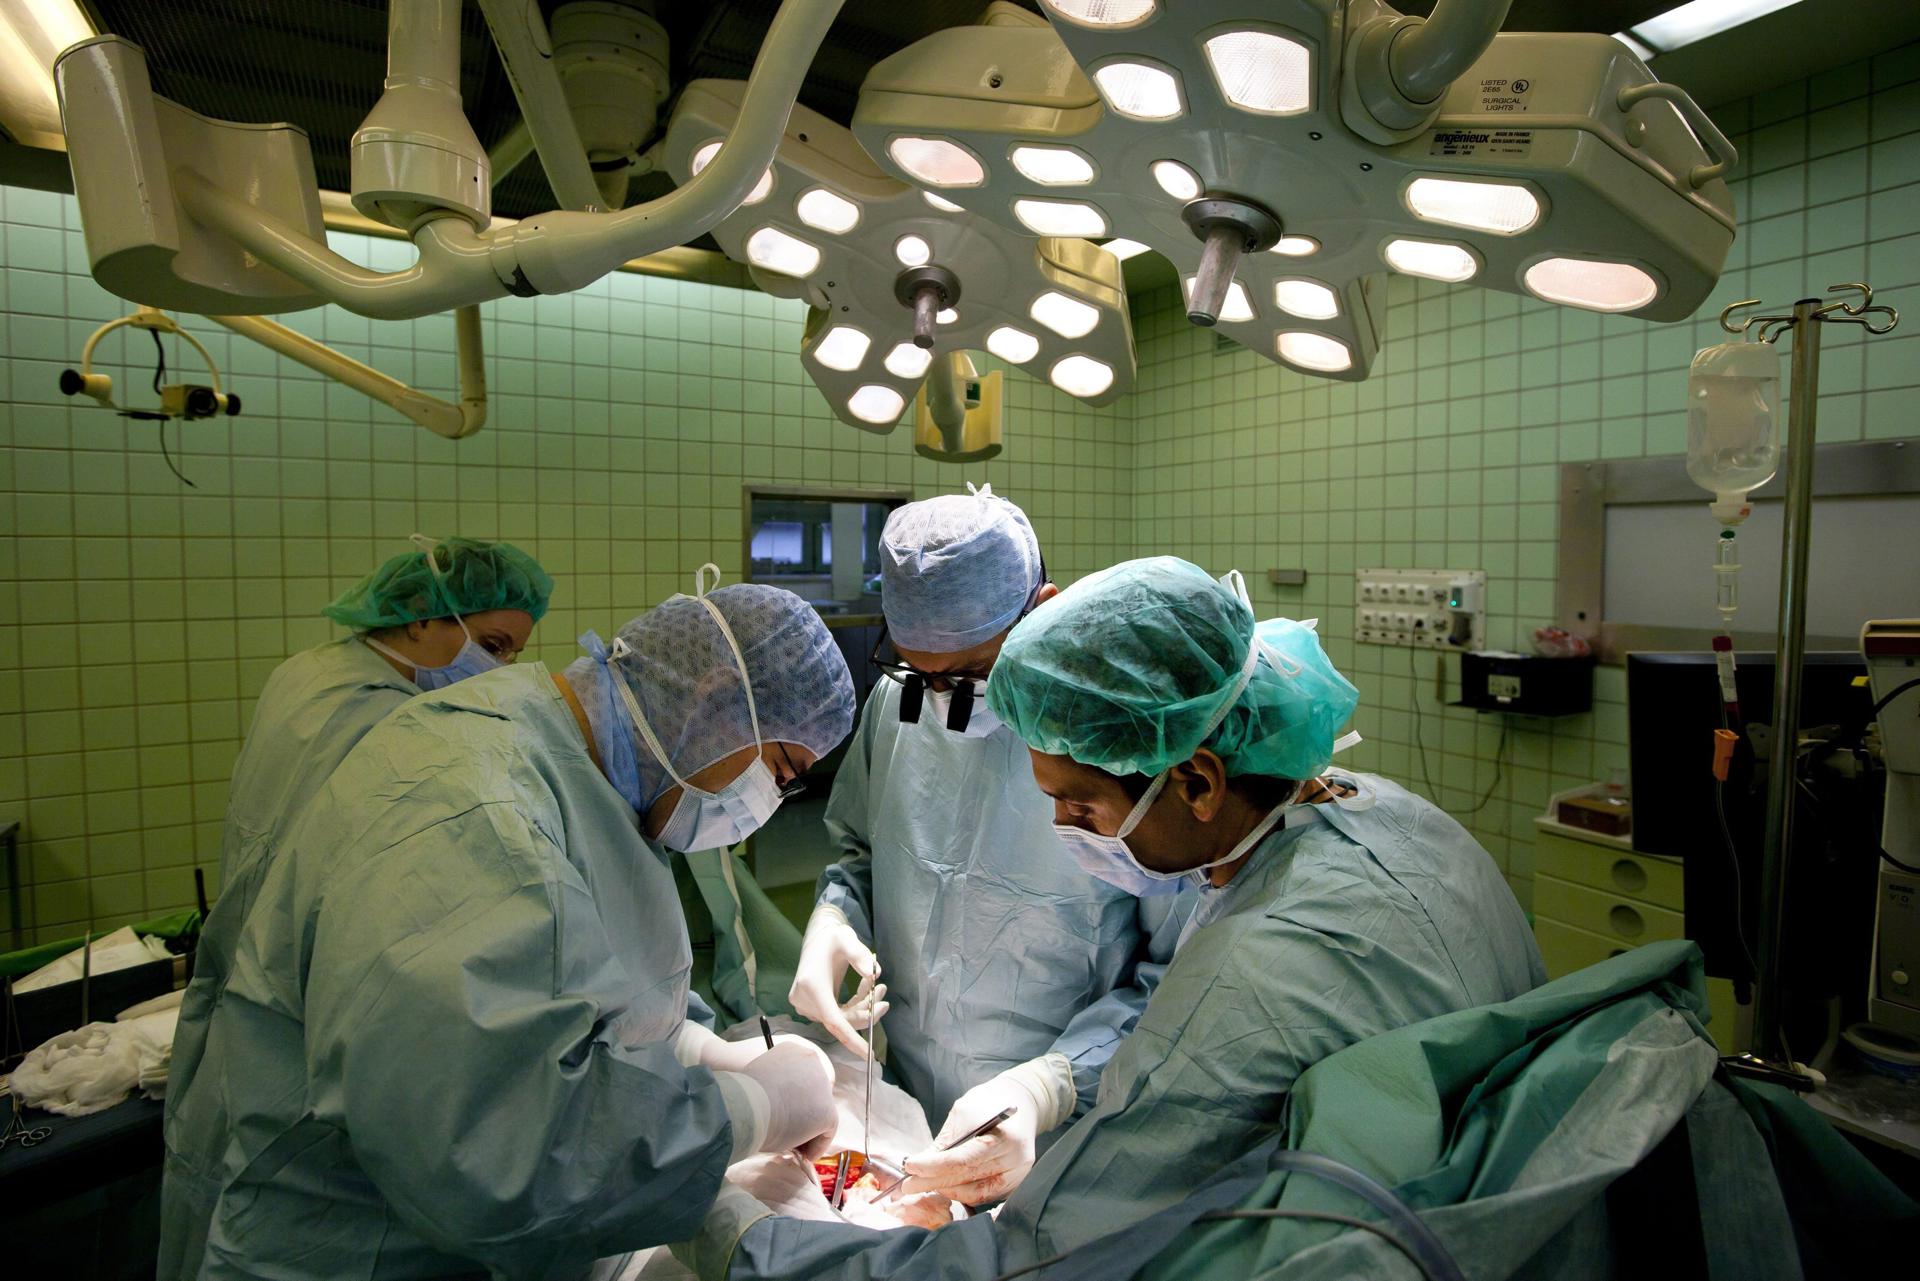 Fotografía de archivo que muestra a varios cirujanos mientras trabajan en una operación de transplante de riñón. EFE/Balazs Mohai